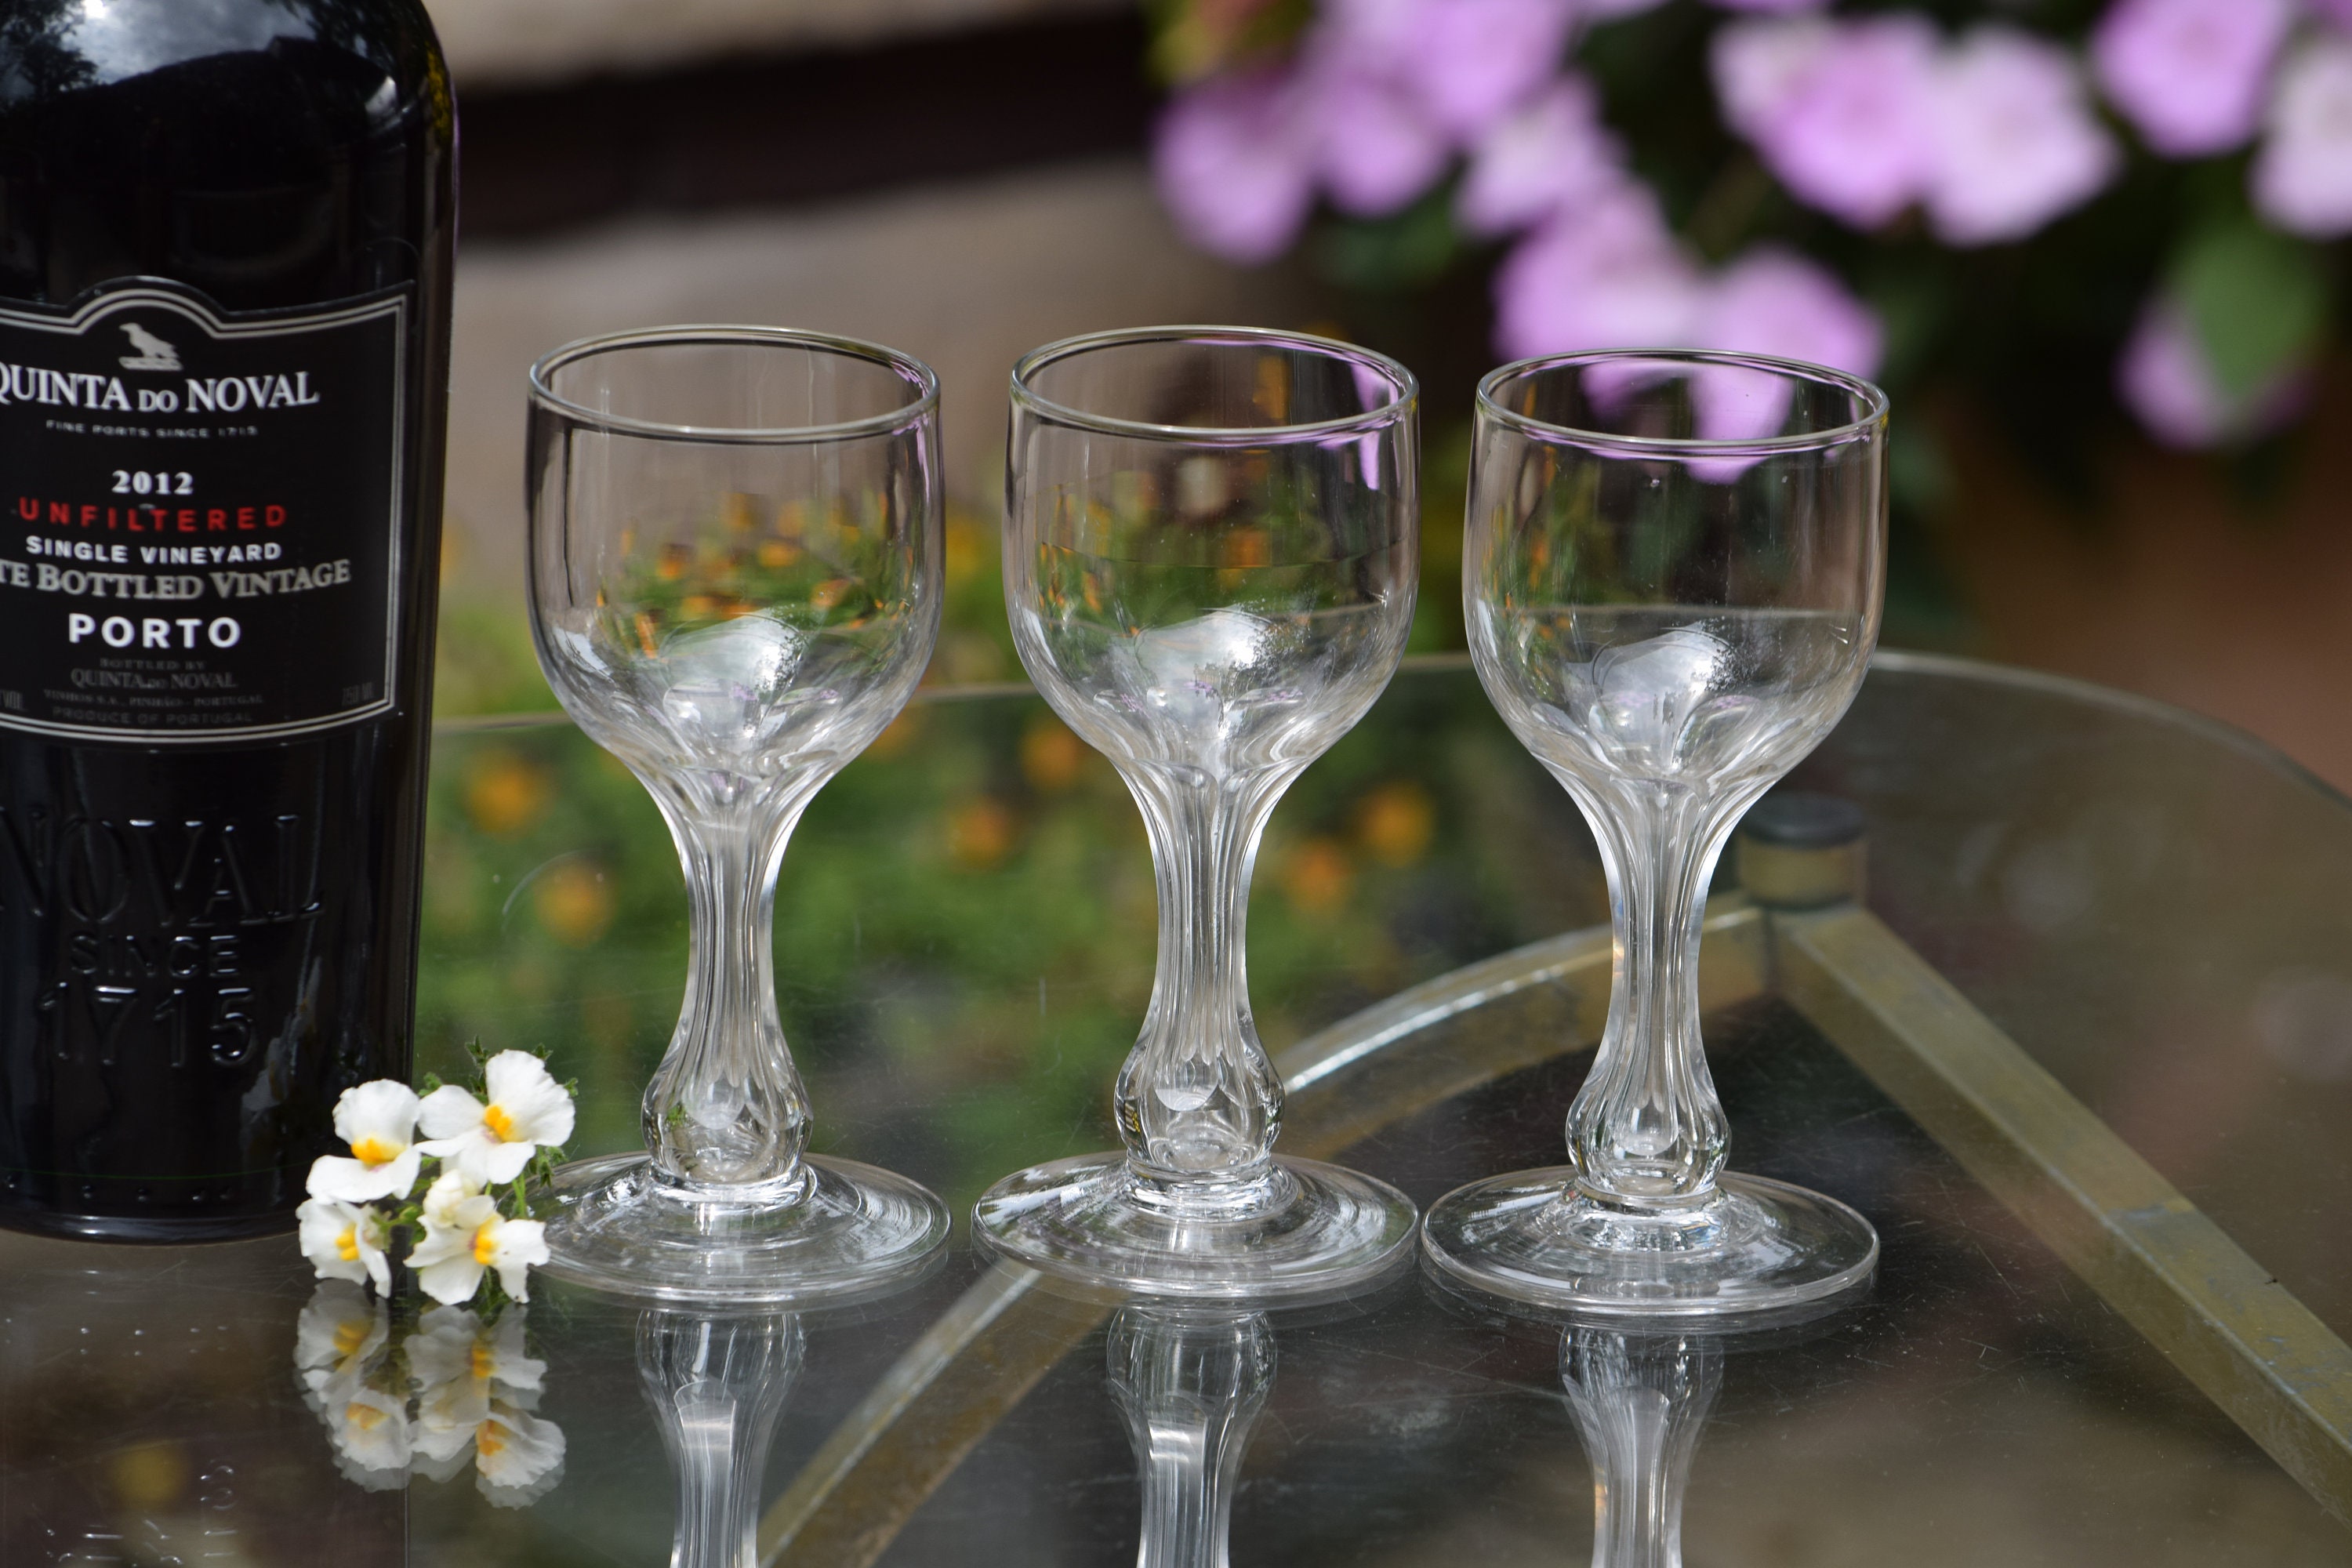 6 Vintage Hollow Stem Port Wine Glasses, 1960's, After Dinner